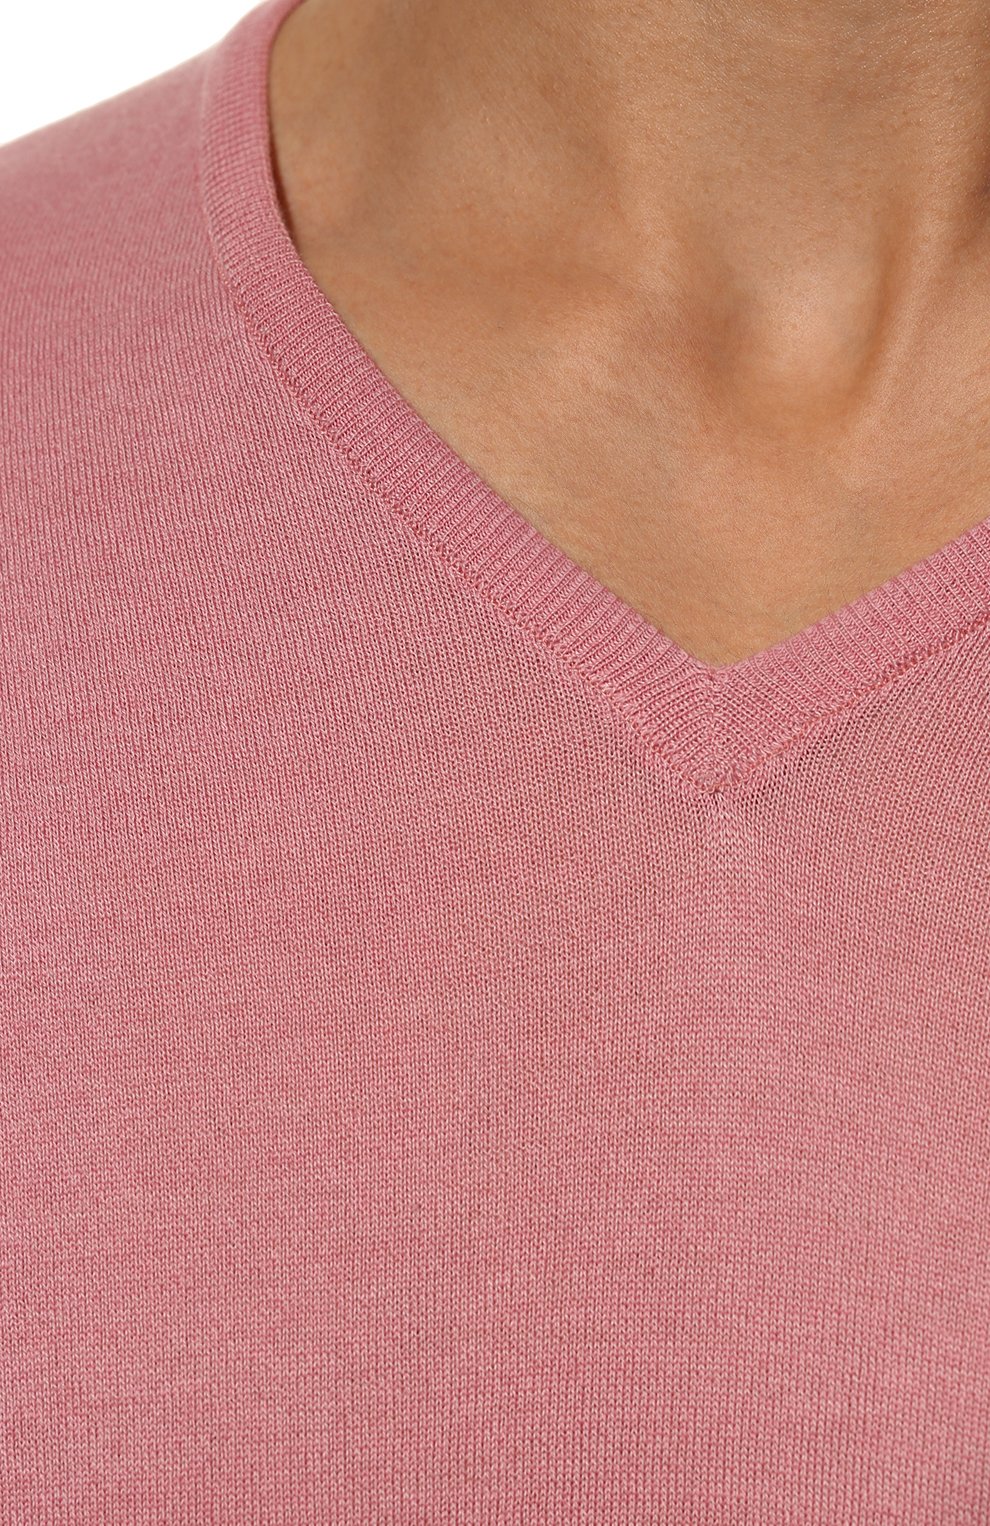 Мужской пуловер из шерсти и хлопка JOHN SMEDLEY розового цвета, арт. CBLENHEIM | Фото 5 (Материал внешний: Шерсть, Хлопок; Рукава: Длинные; Принт: Без принта; Длина (для топов): Стандартные; Вырез: V-образный; Мужское Кросс-КТ: Пуловеры; Стили: Романтичный)